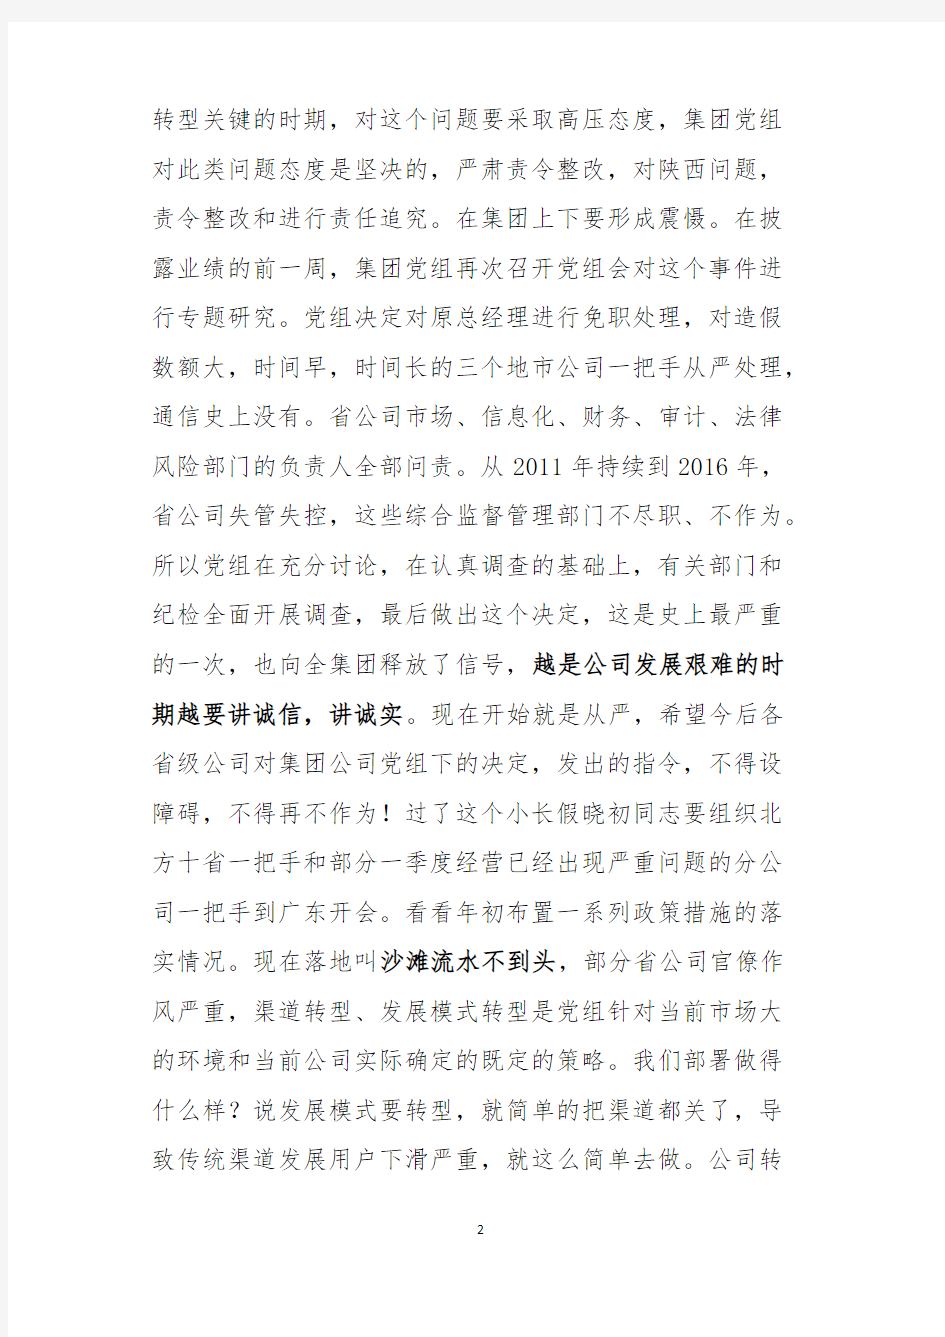 Removed_李福申副总经理在集团公司审计工作会上的讲话(录音整理稿)51